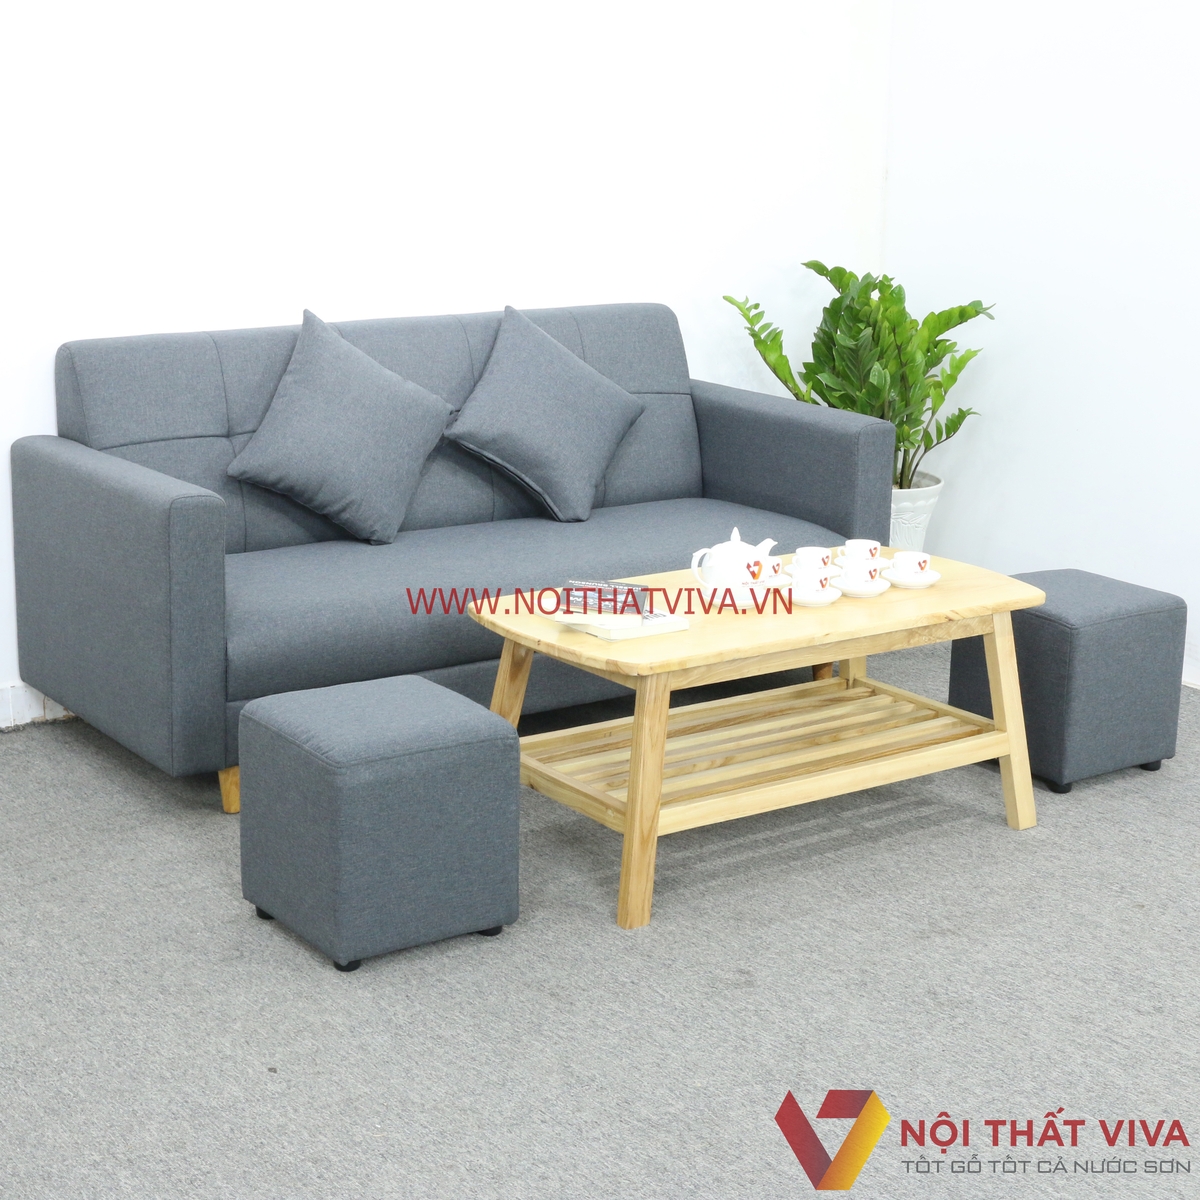 Những chiếc bộ bàn ghế sofa mini nỉ màu xám có thể là lựa chọn hoàn hảo cho không gian hiện đại của bạn. Với chất liệu cao cấp, bền, đẹp và màu sắc tự nhiên, bạn sẽ đón nhận sự thoải mái và tinh tế để tạo nên không gian sống hoàn hảo.